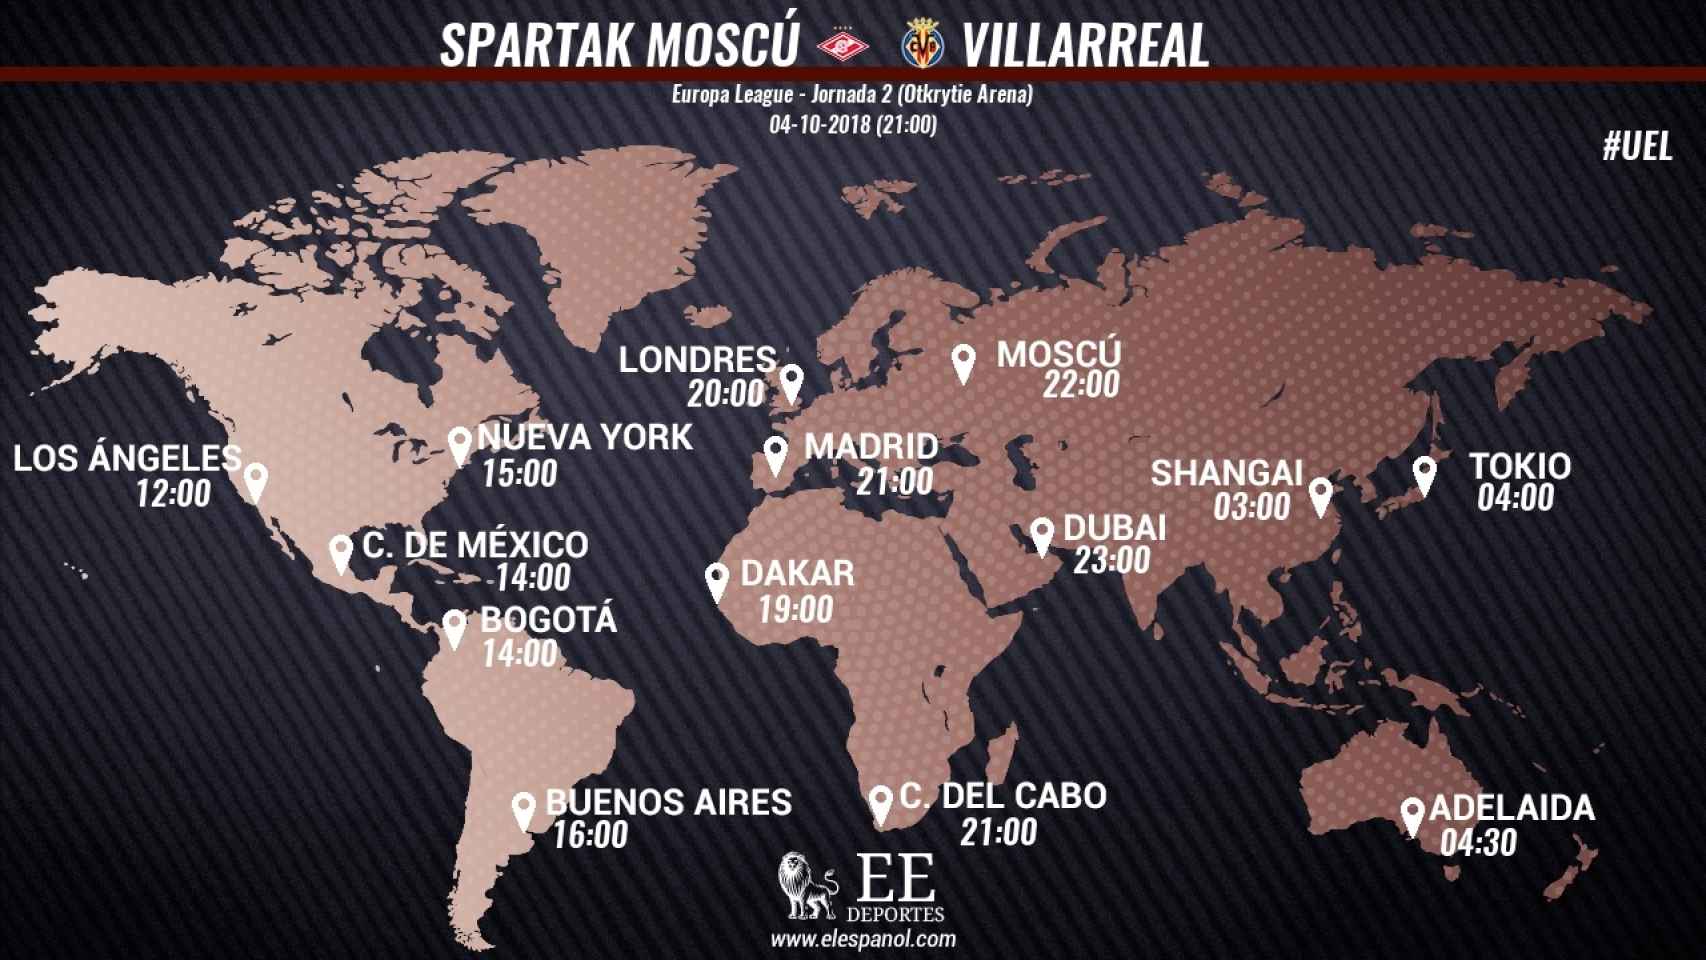 Horario del Spartak Moscú - Villarreal